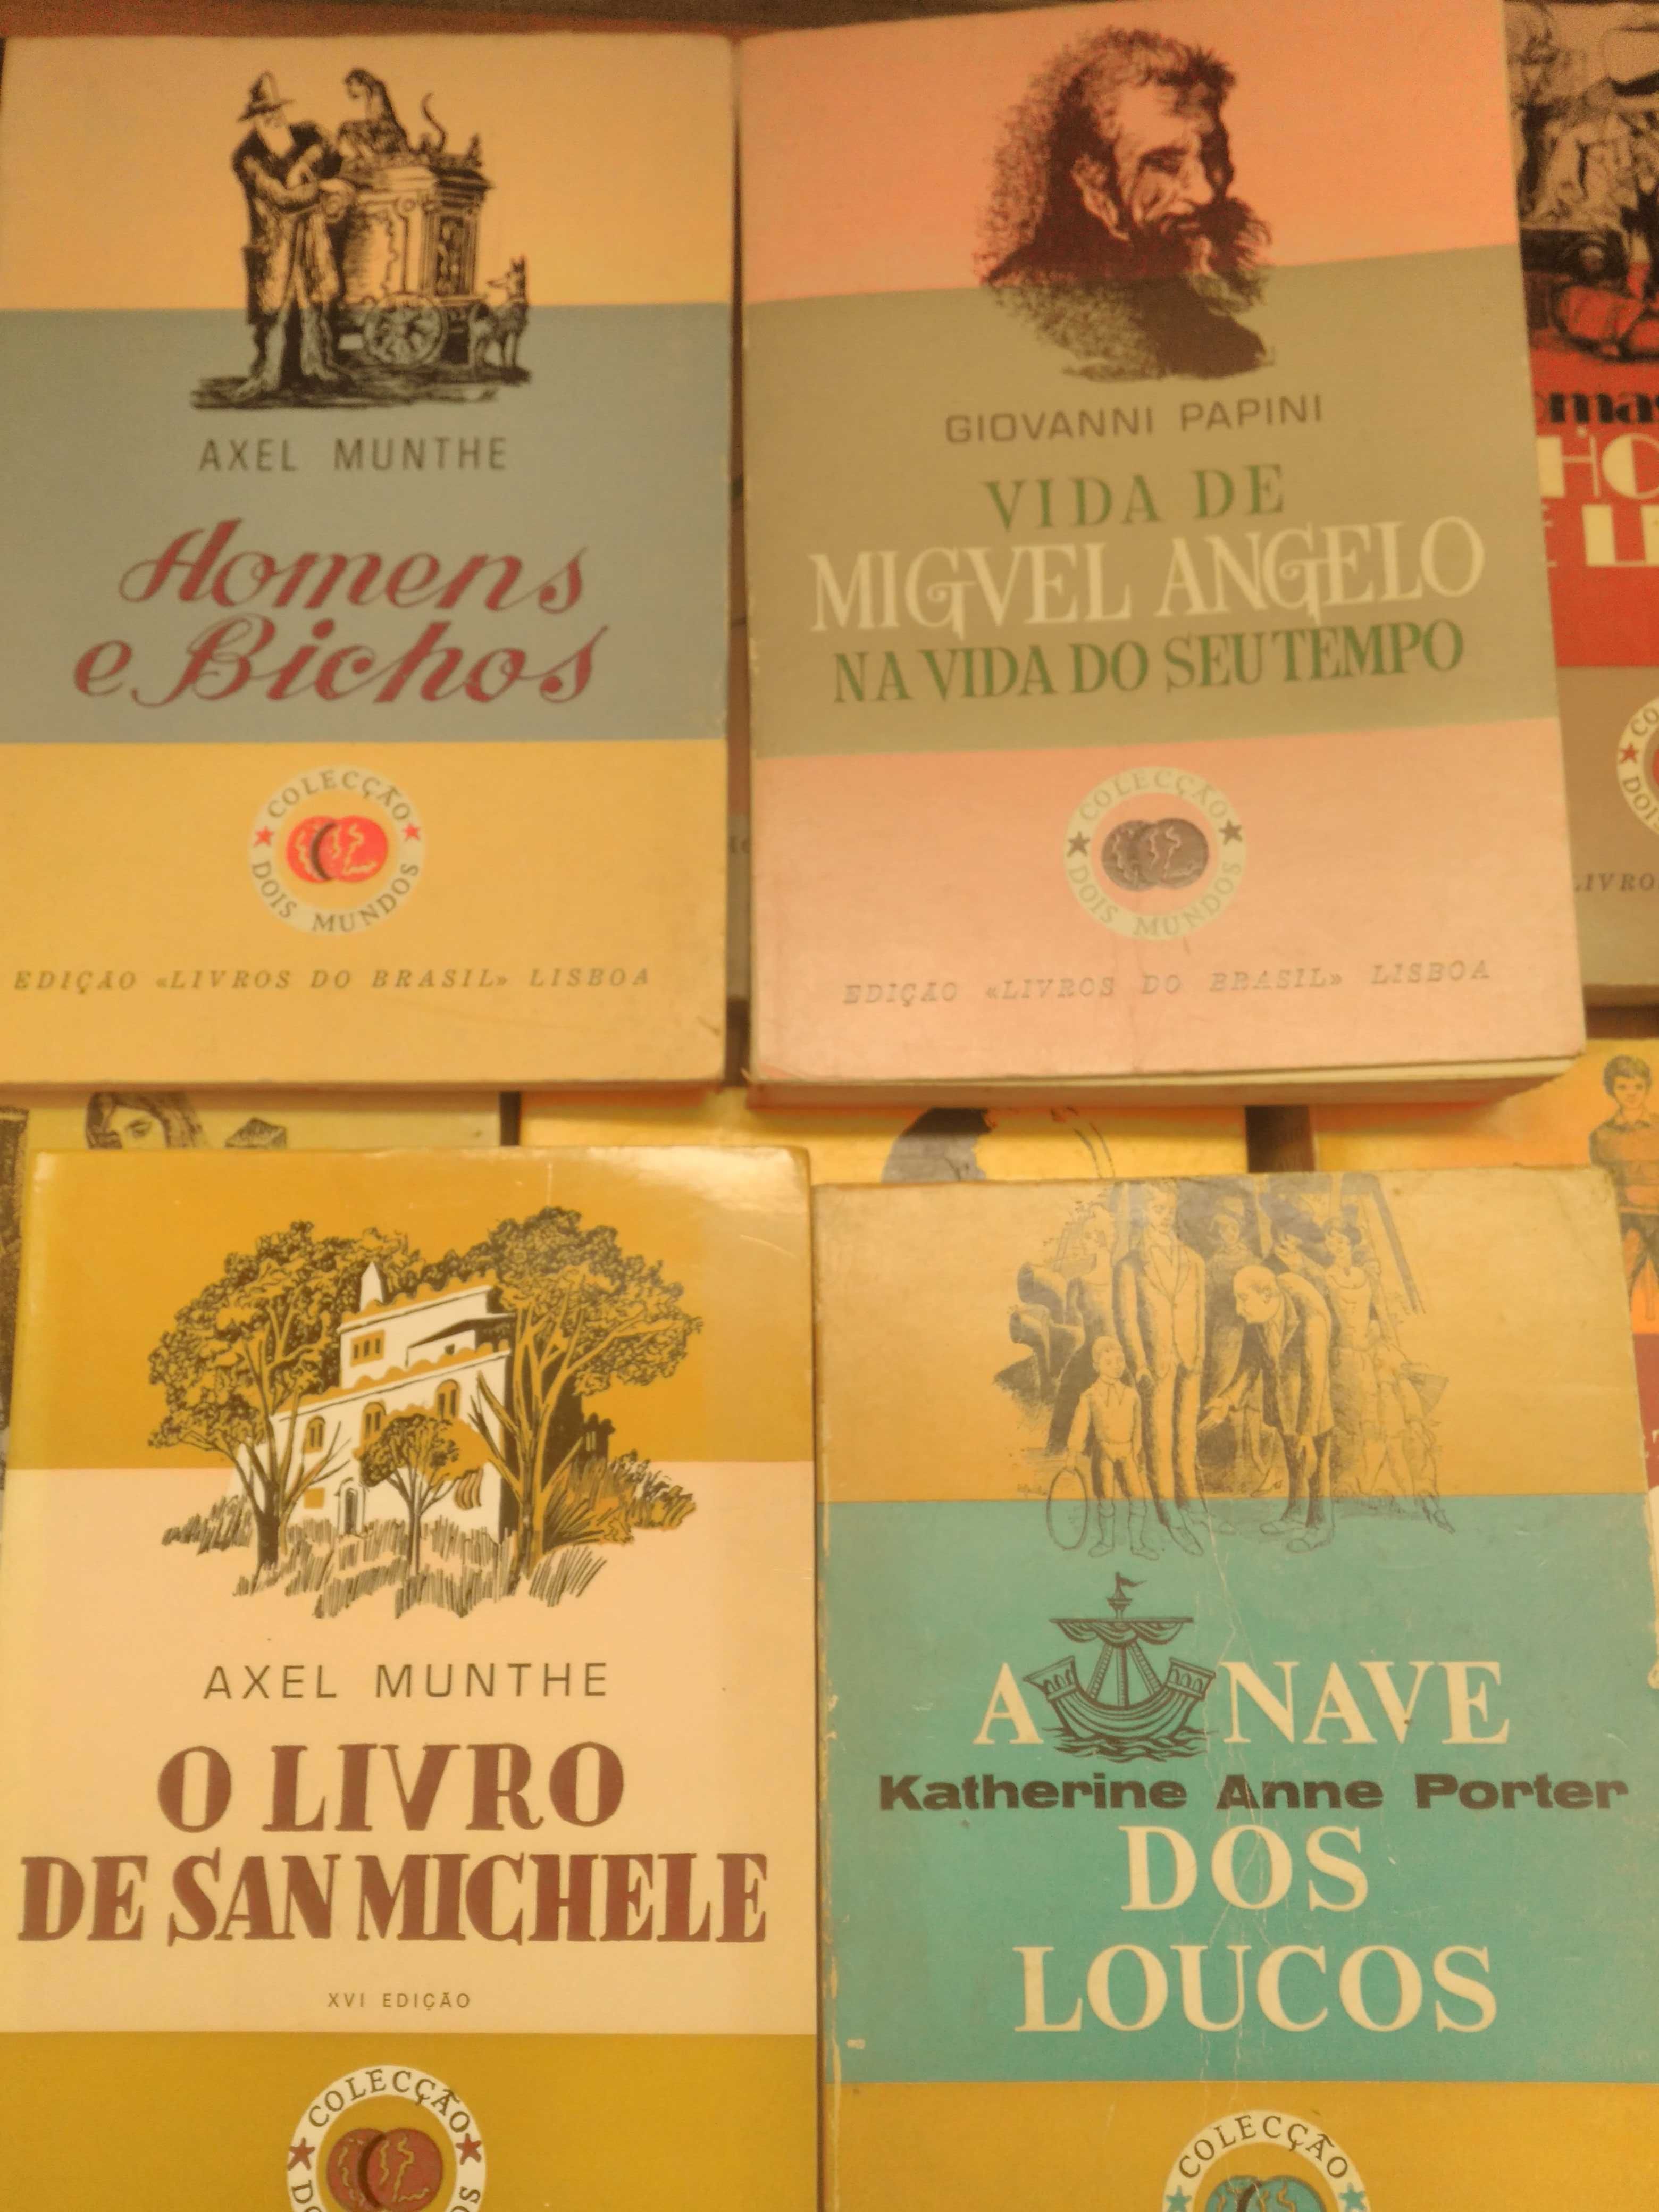 Edições Livros do Brasil, desde